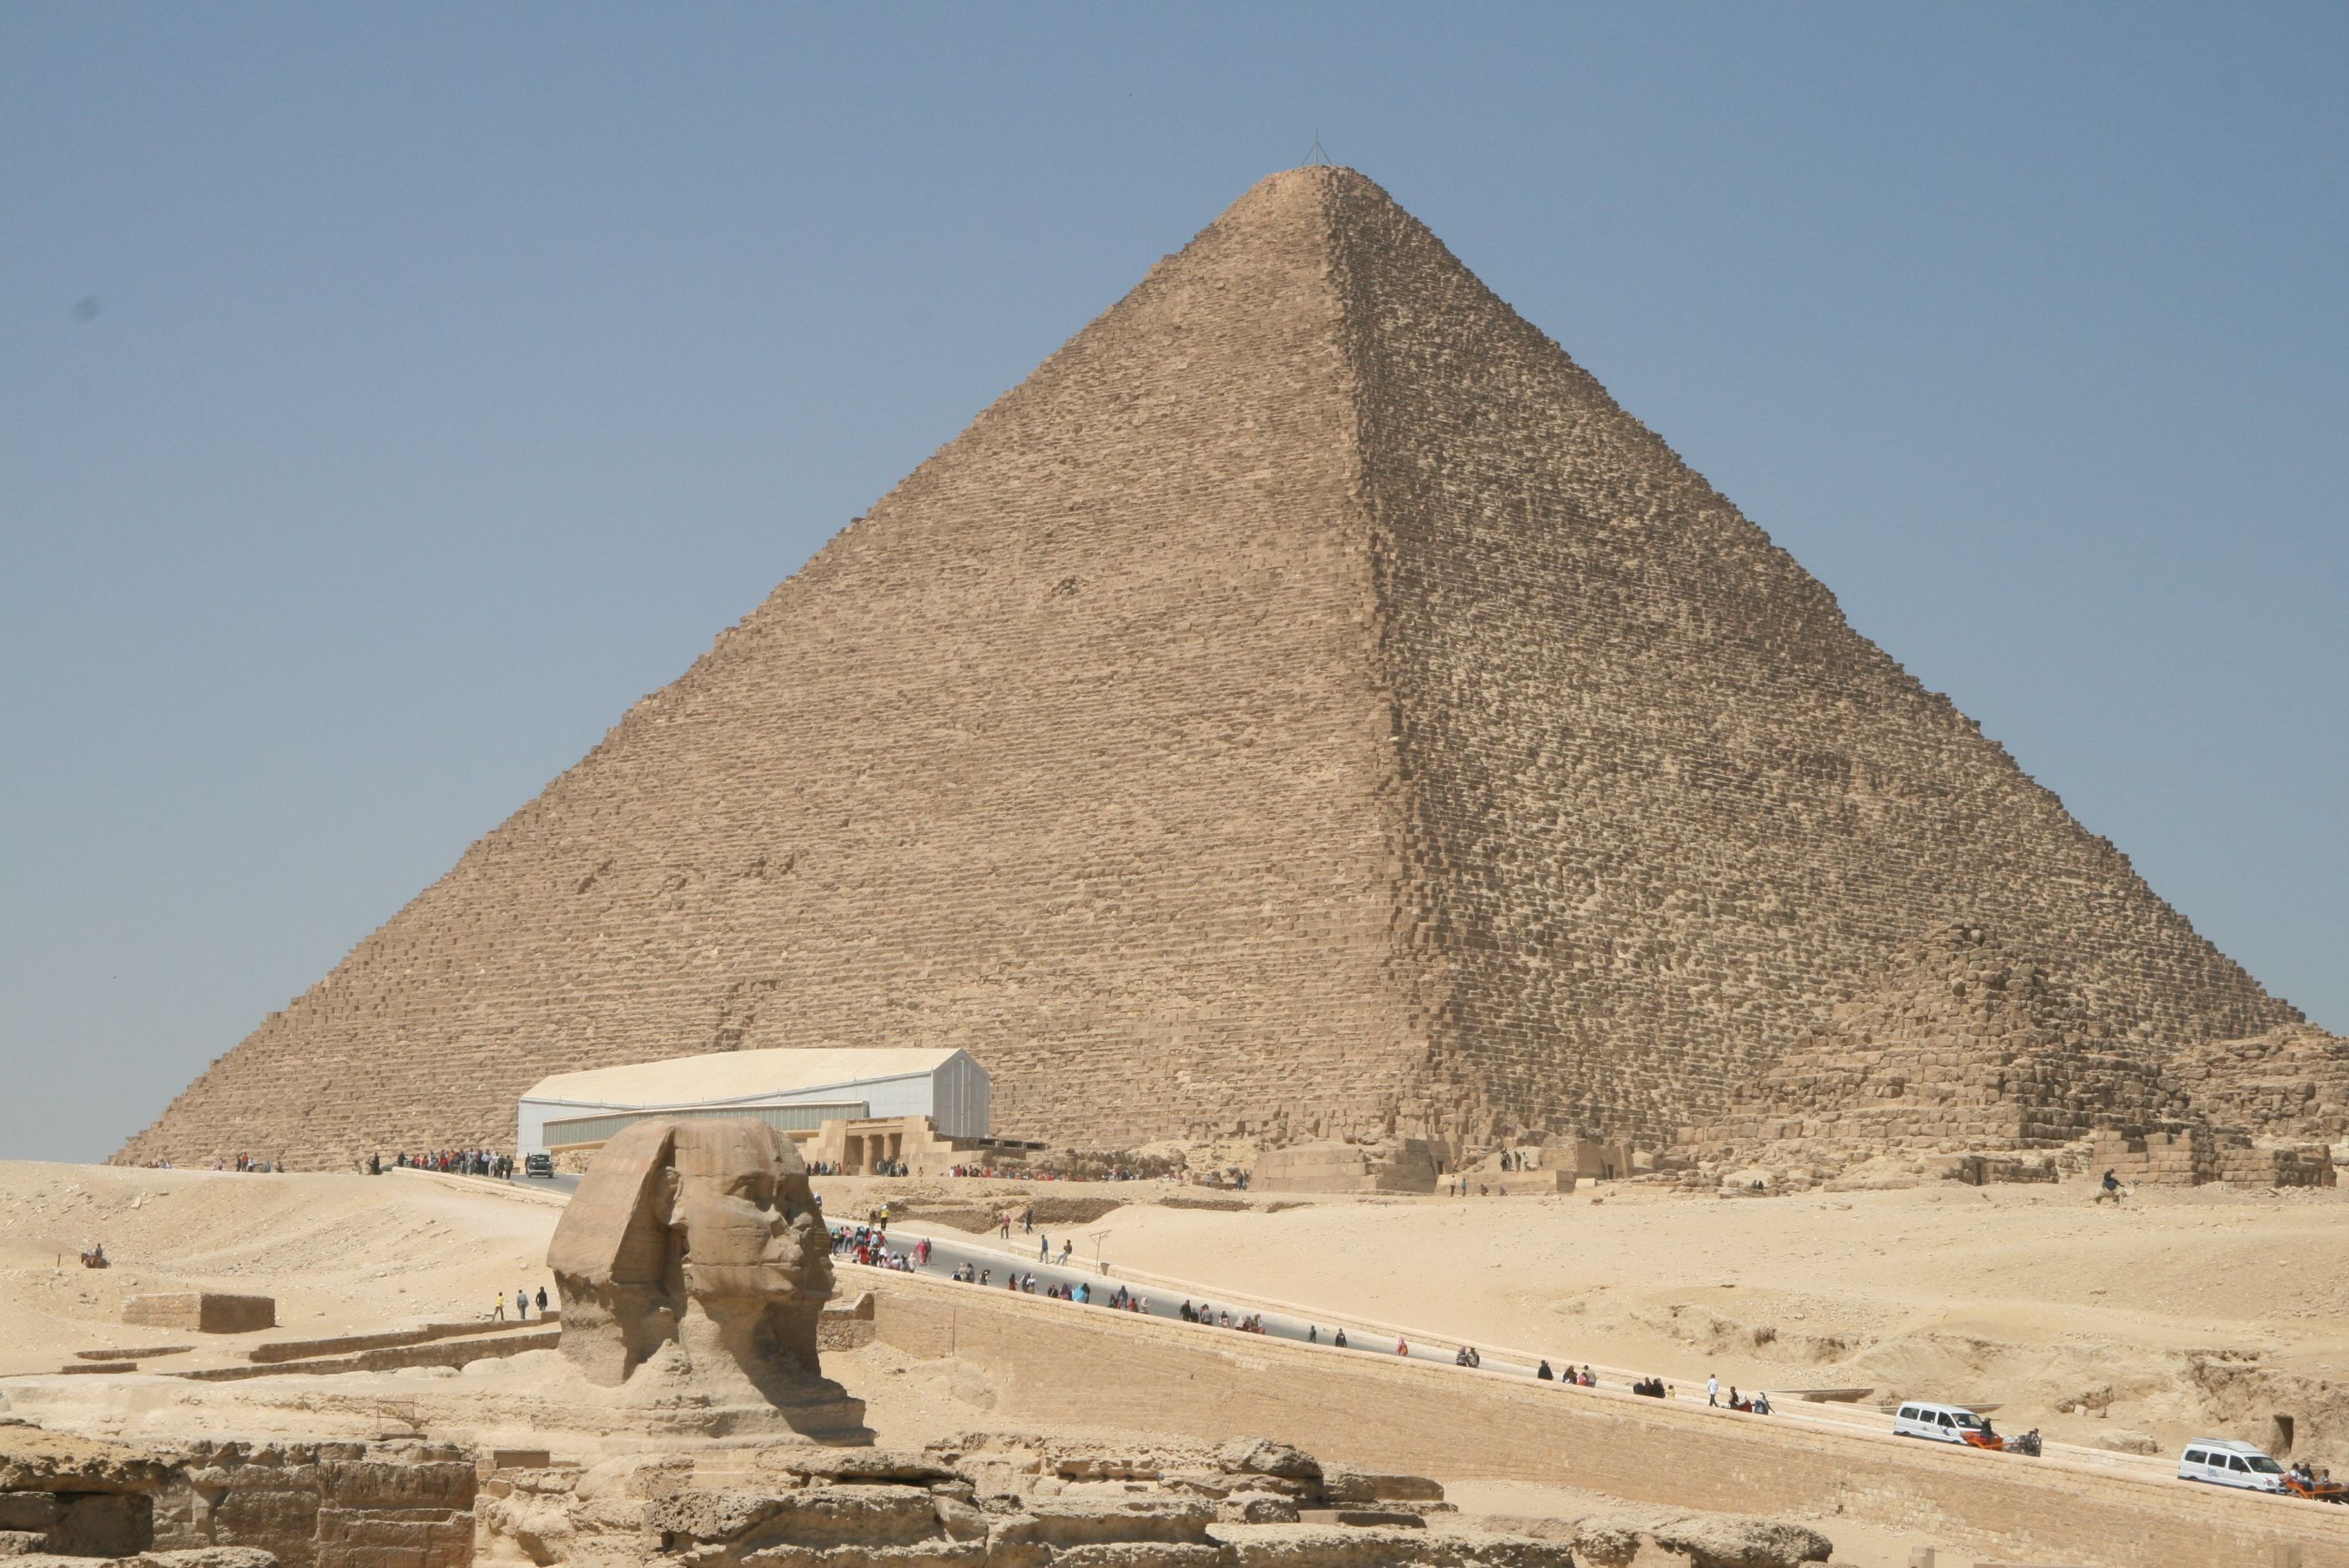 Ägypten - das Land der Pharaonen und die Wiege der Zivilisation. Es ist ein Land, das auf eine lange und faszinierende Geschichte zurückblicken kann und voller kultureller Schätze und historischer Stätten ist, die die Menschheit seit Jahrhunderten faszinieren. Viele von uns haben schon von den weltberühmten Pyramiden und der majestätischen Sphinx gehört, aber es gibt noch so viele andere unglaubliche Orte zu entdecken. Die Sehenswürdigkeiten in Ägypten scheinen einem beim ersten Besuch völlig irreal – Pyramiden, Tempel, aber auch Städte und Nationalparks zählen dazu. Was gibt es zu entdecken? In meinem Ägypten Sehenswürdigkeiten Erfahrungsbericht stelle ich dir die wichtigsten Must-sees des Landes vor.